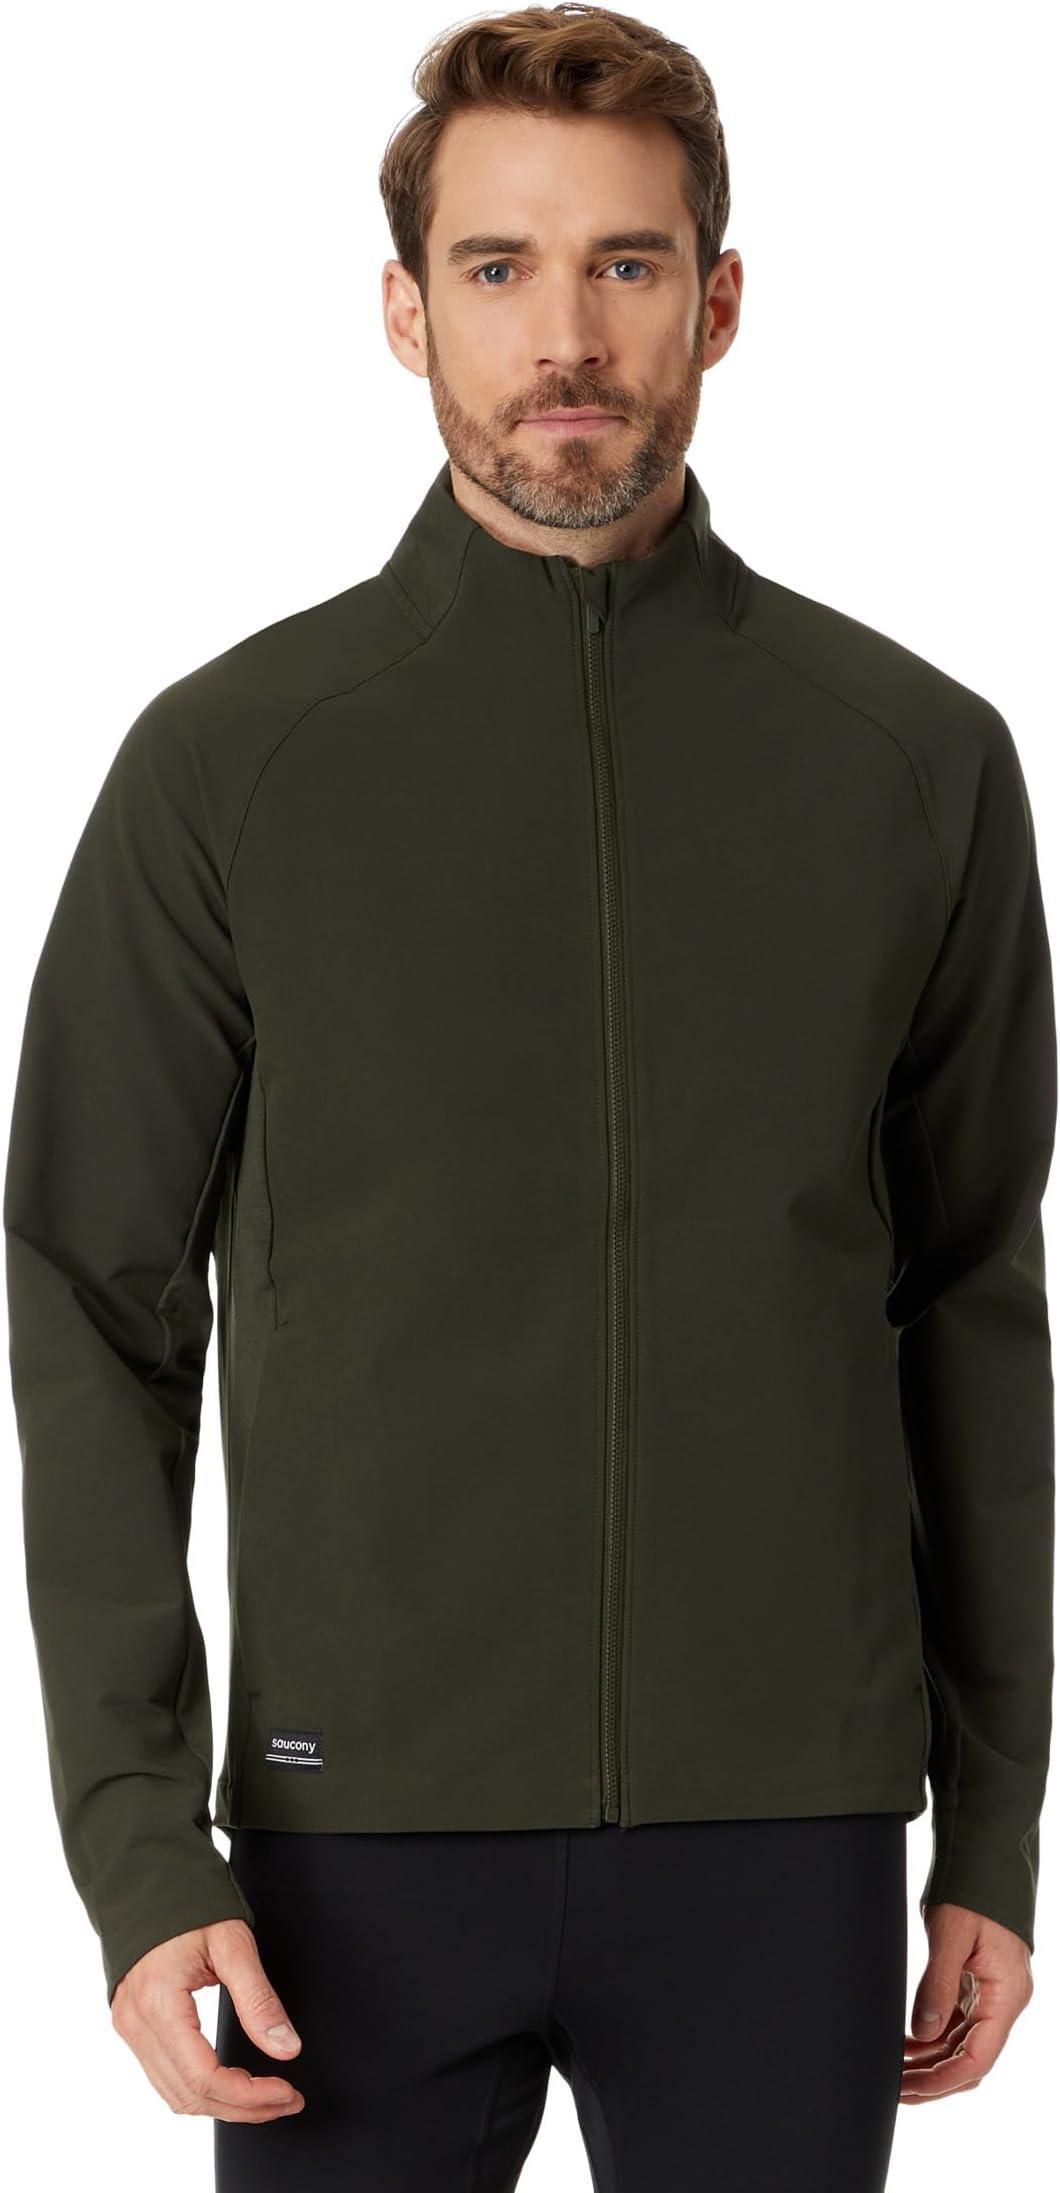 Куртка Triumph Jacket Saucony, цвет Umbra цена и фото